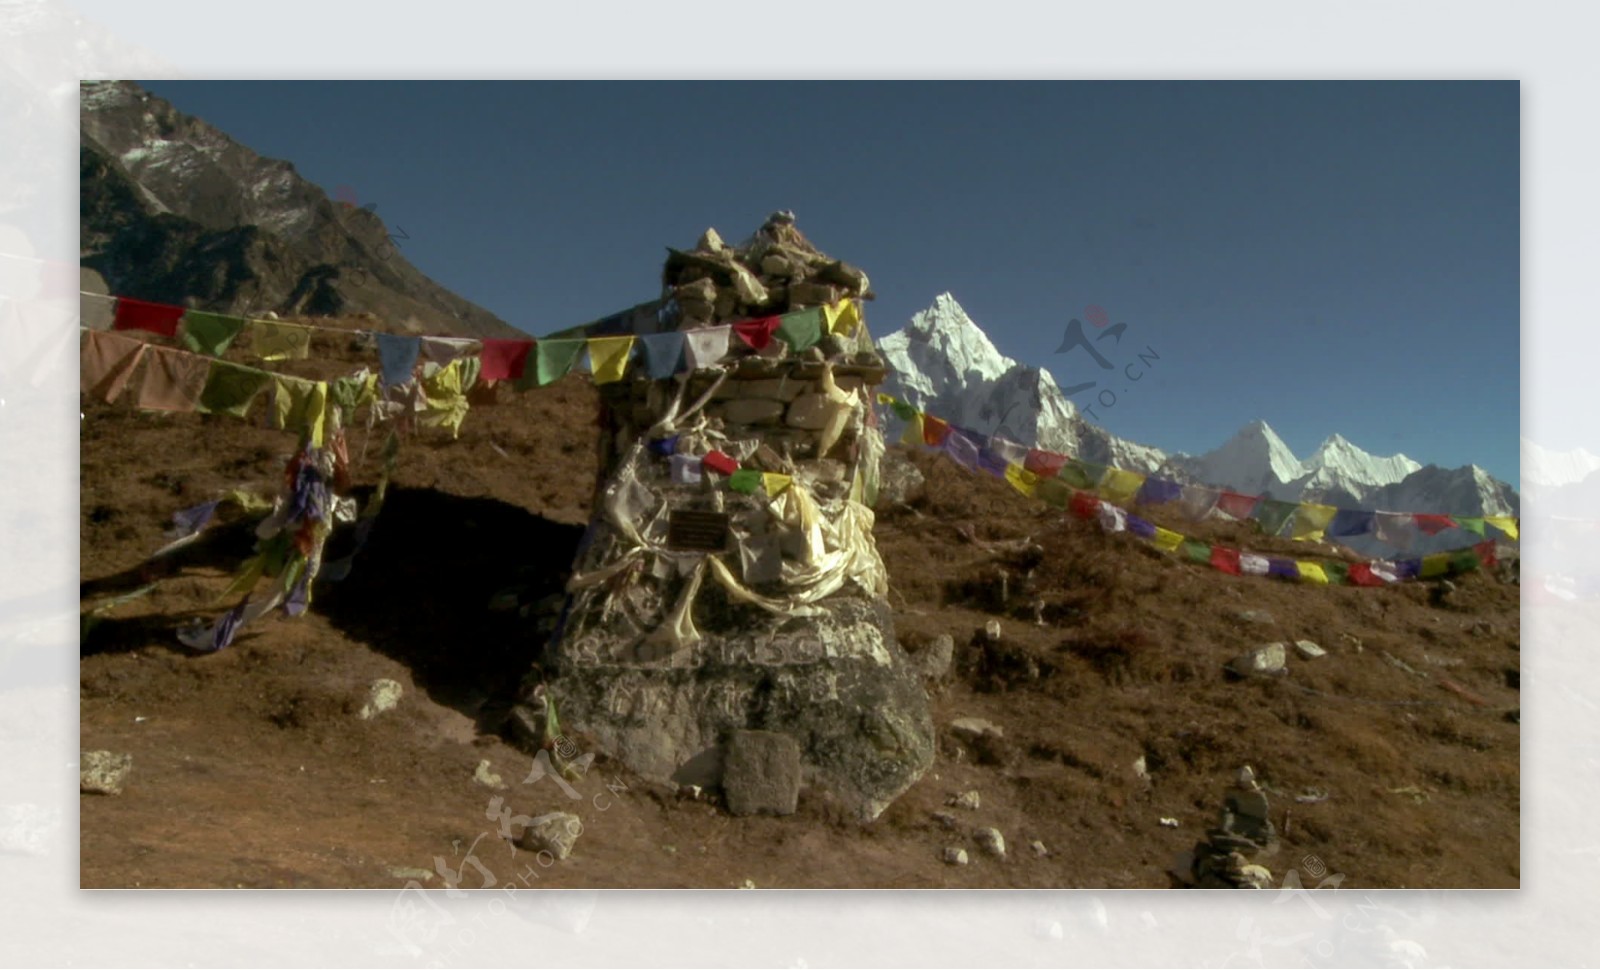 随着佛教经幡在喜马拉雅山的股票视频纪念碑